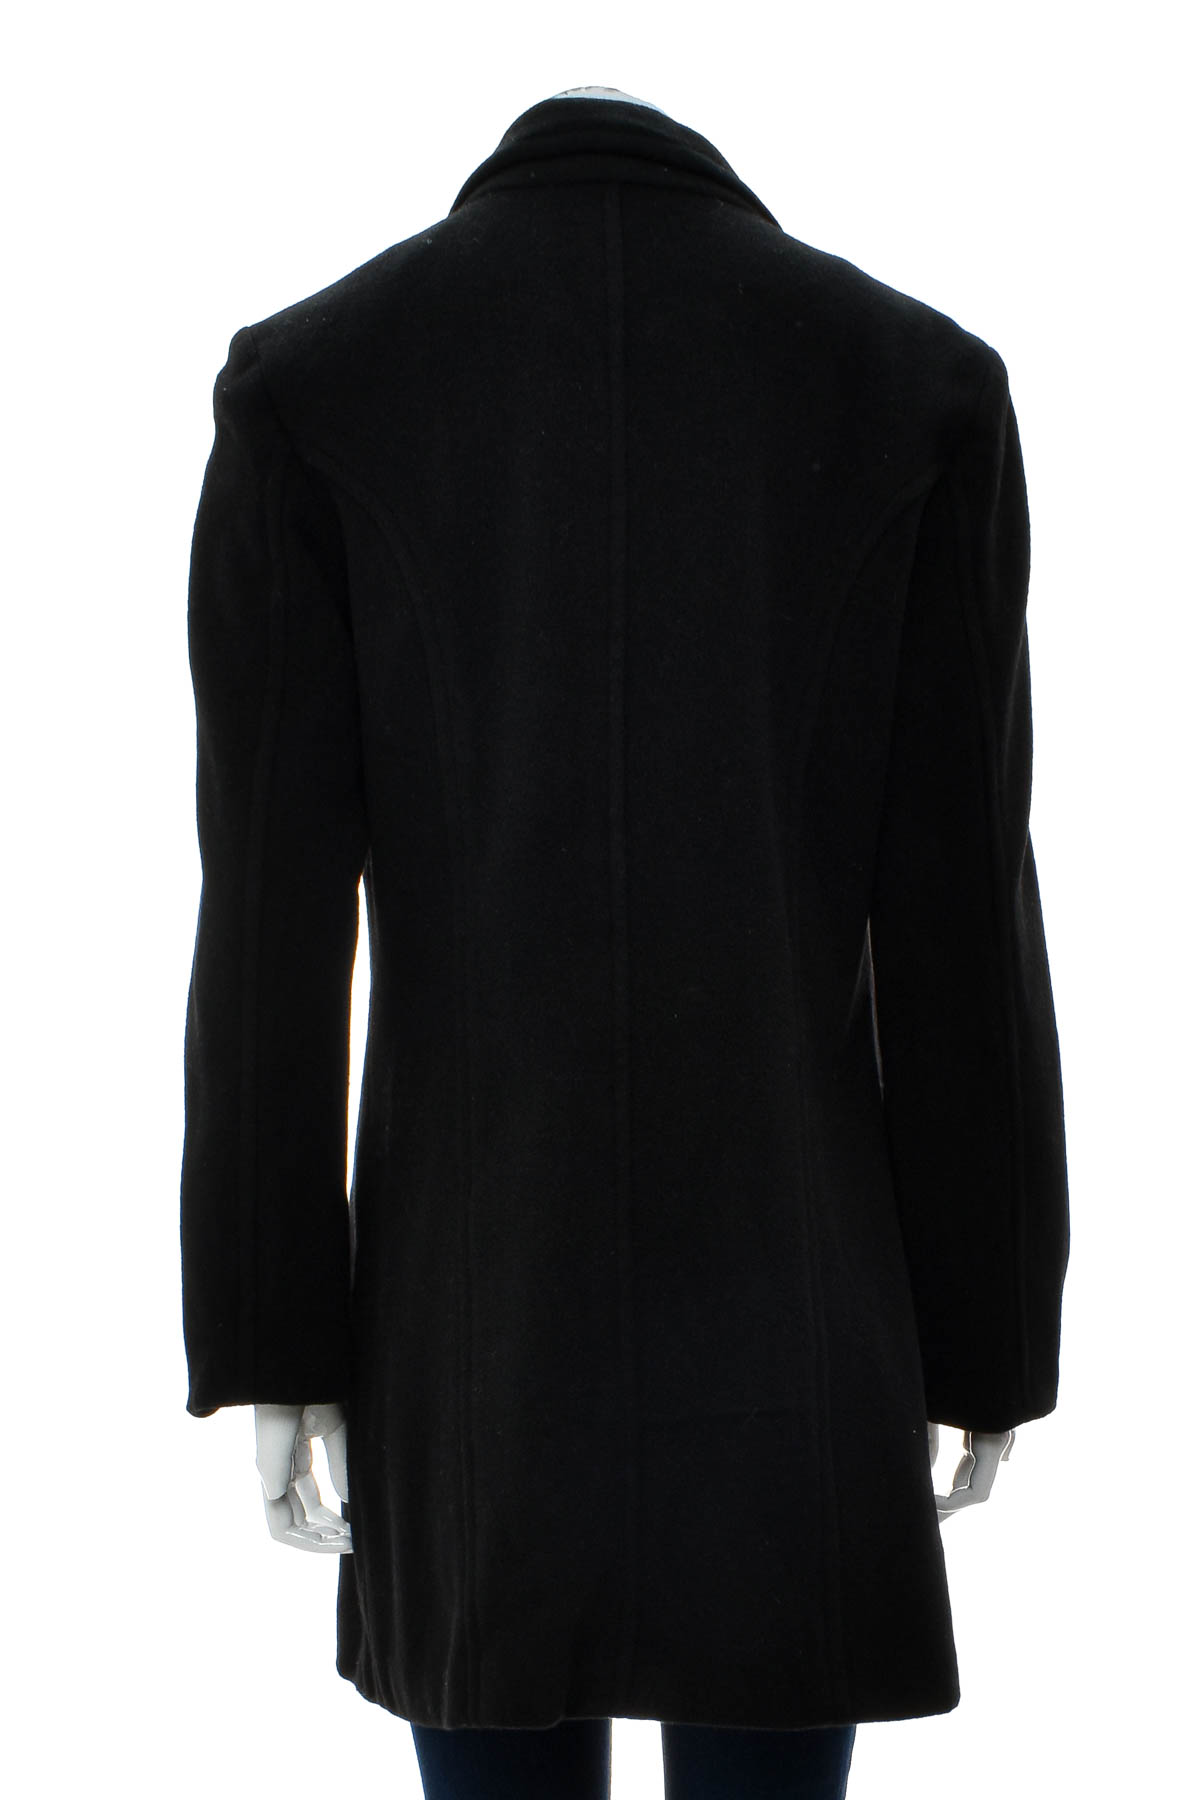 Women's coat - ElleNor - 1